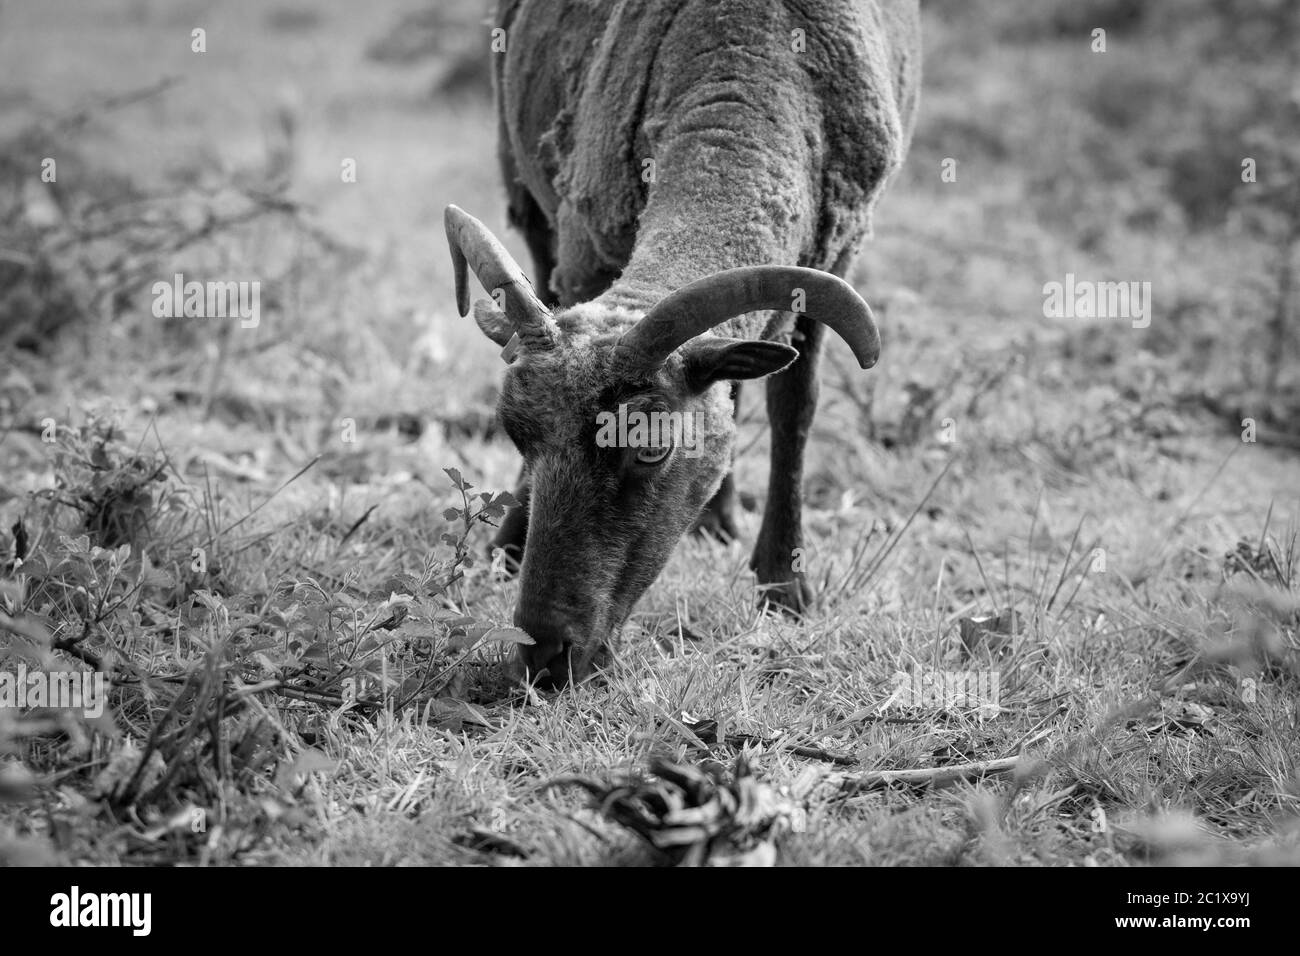 Photographie noir blanc de mouton brun sur un pré. Campagne anglaise. Photographie de la faune. Banque D'Images